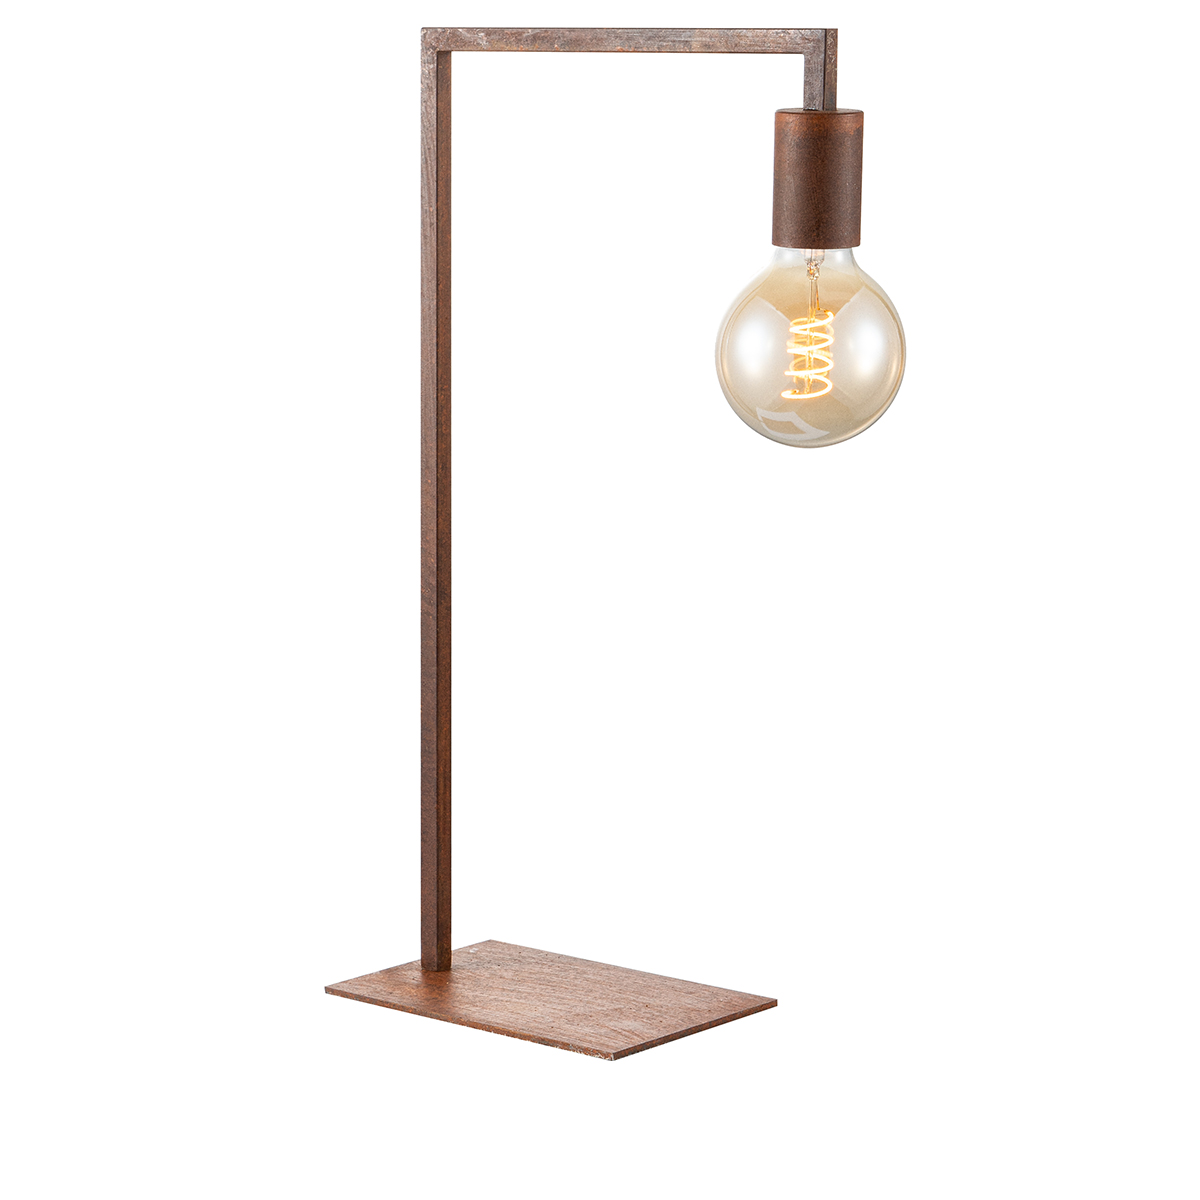 Tangla lighting - TLT1028-01RS - LED table lamp 1 Light - metal in rusty - square - E27